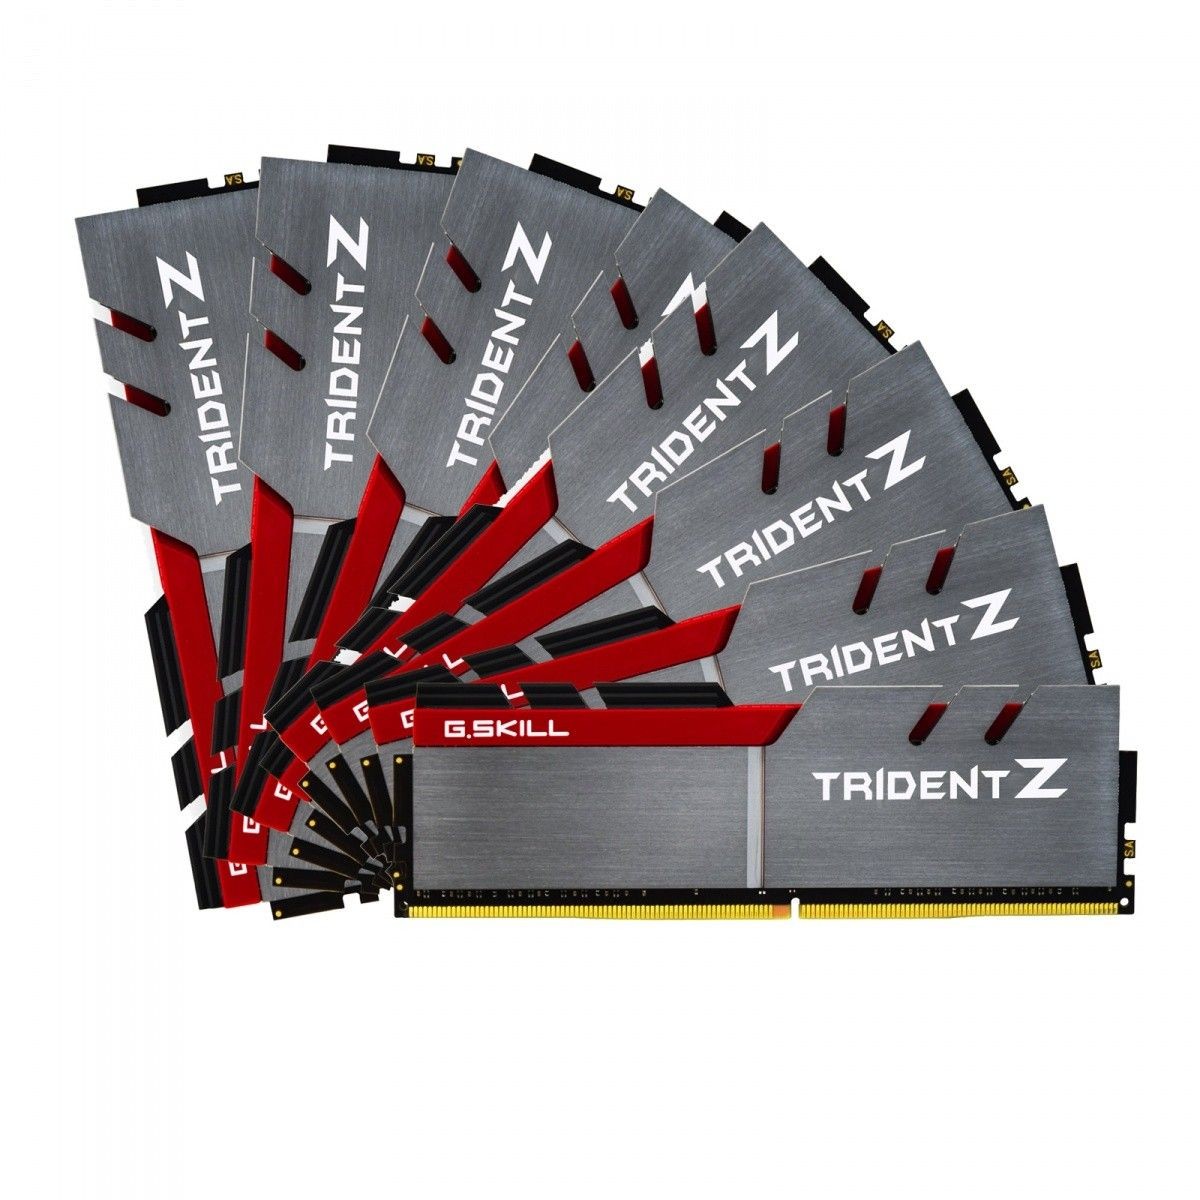 GSkill TridentZ Series - DDR4 - 128 GB: 8 x 16 GB - DIMM 288-PIN - ungepuffert 